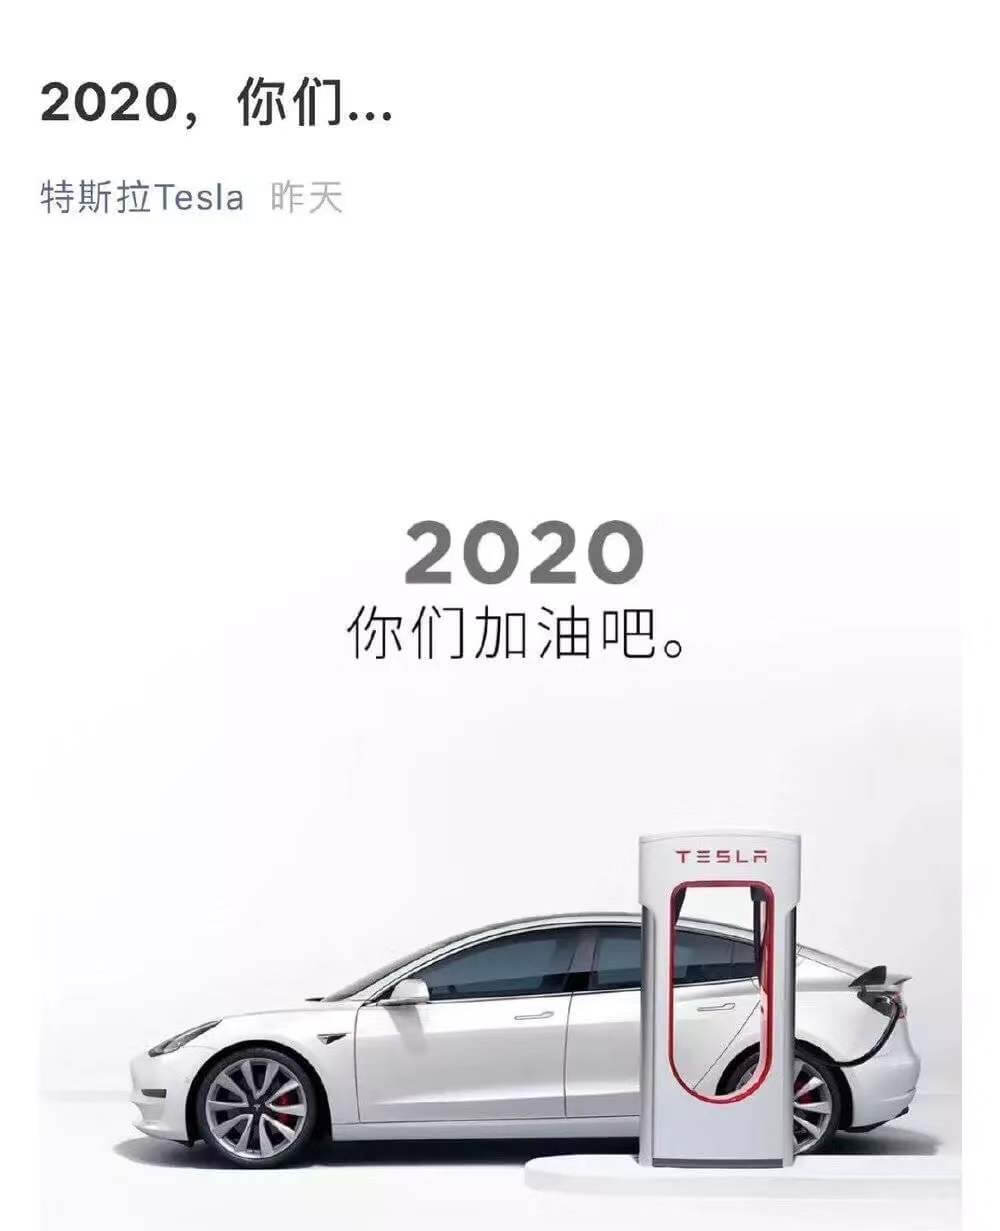 引入特斯拉，只是激活中国汽车制造产业链的一个棋子？